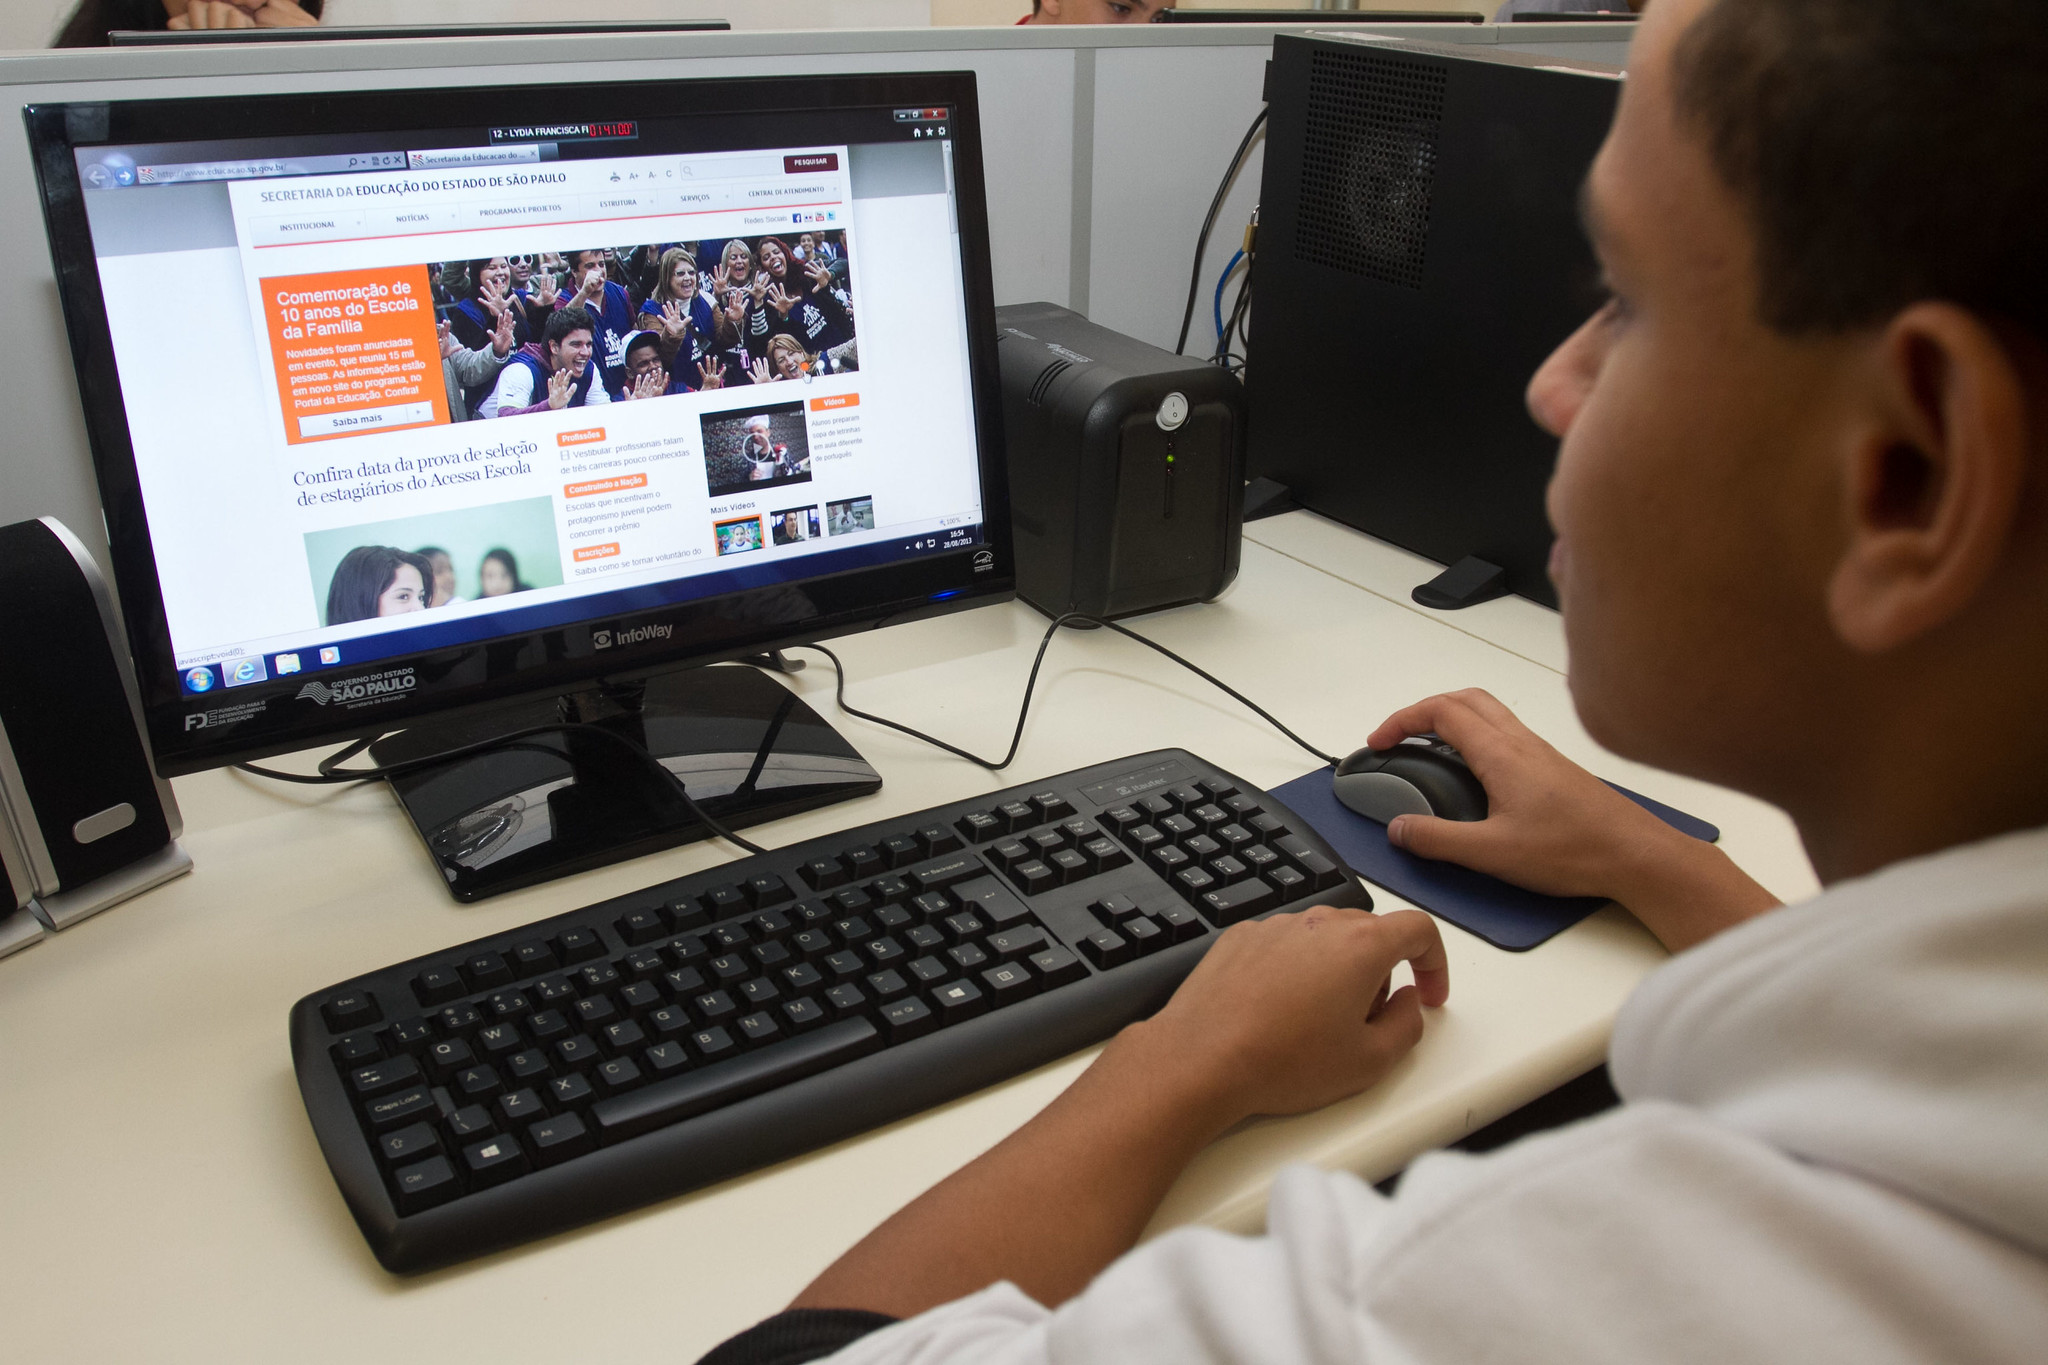 Chip de internet: estudantes já podem manifestar interesse de participação  | Governo do Estado de São Paulo